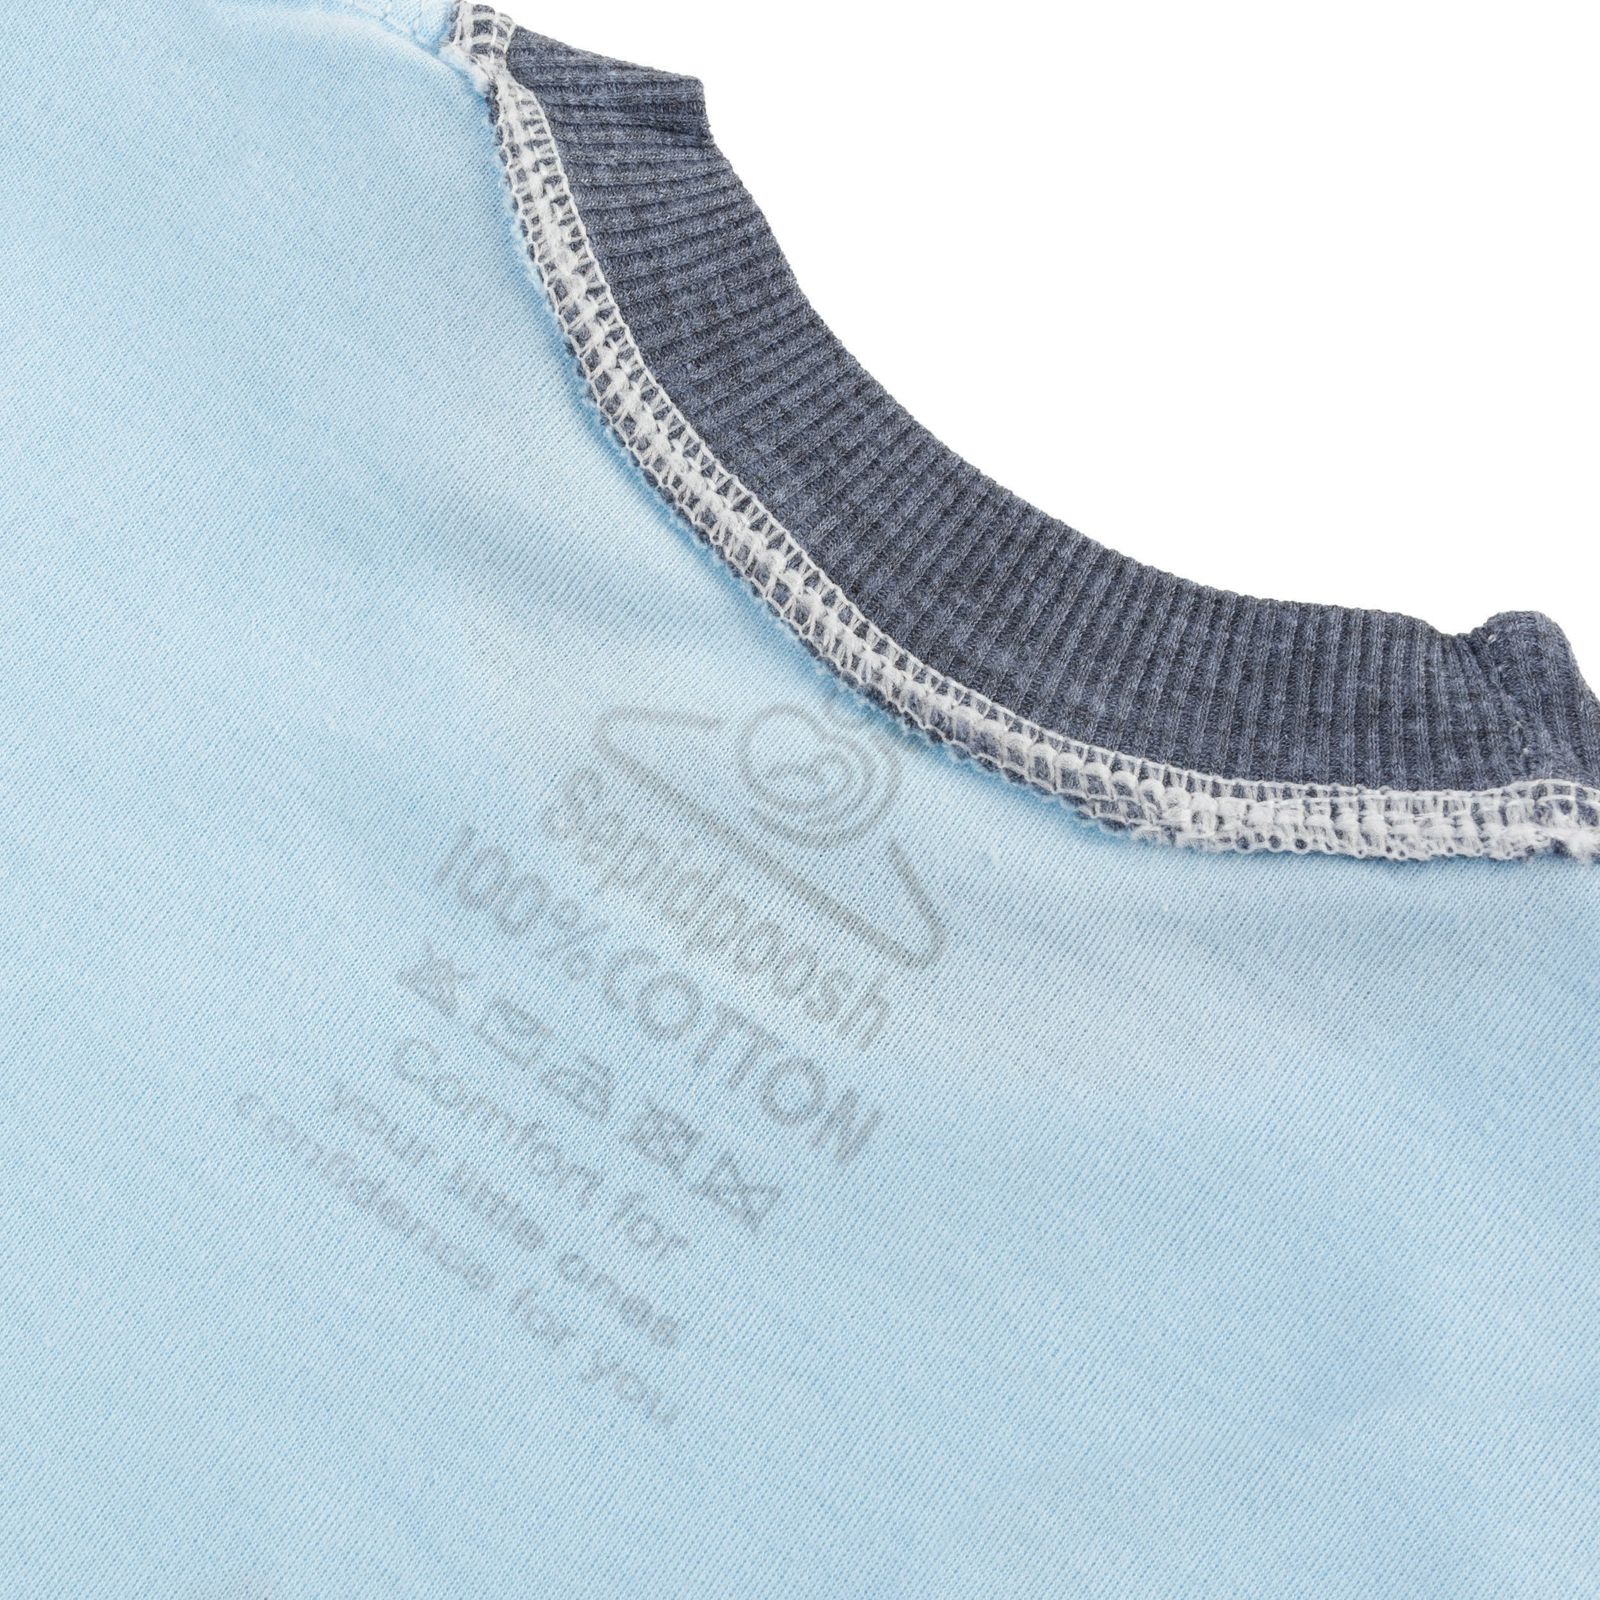 ست تی شرت آستین کوتاه و شلوارک بچگانه سپیدپوش مدل کوسه کد 1402580 -  - 3